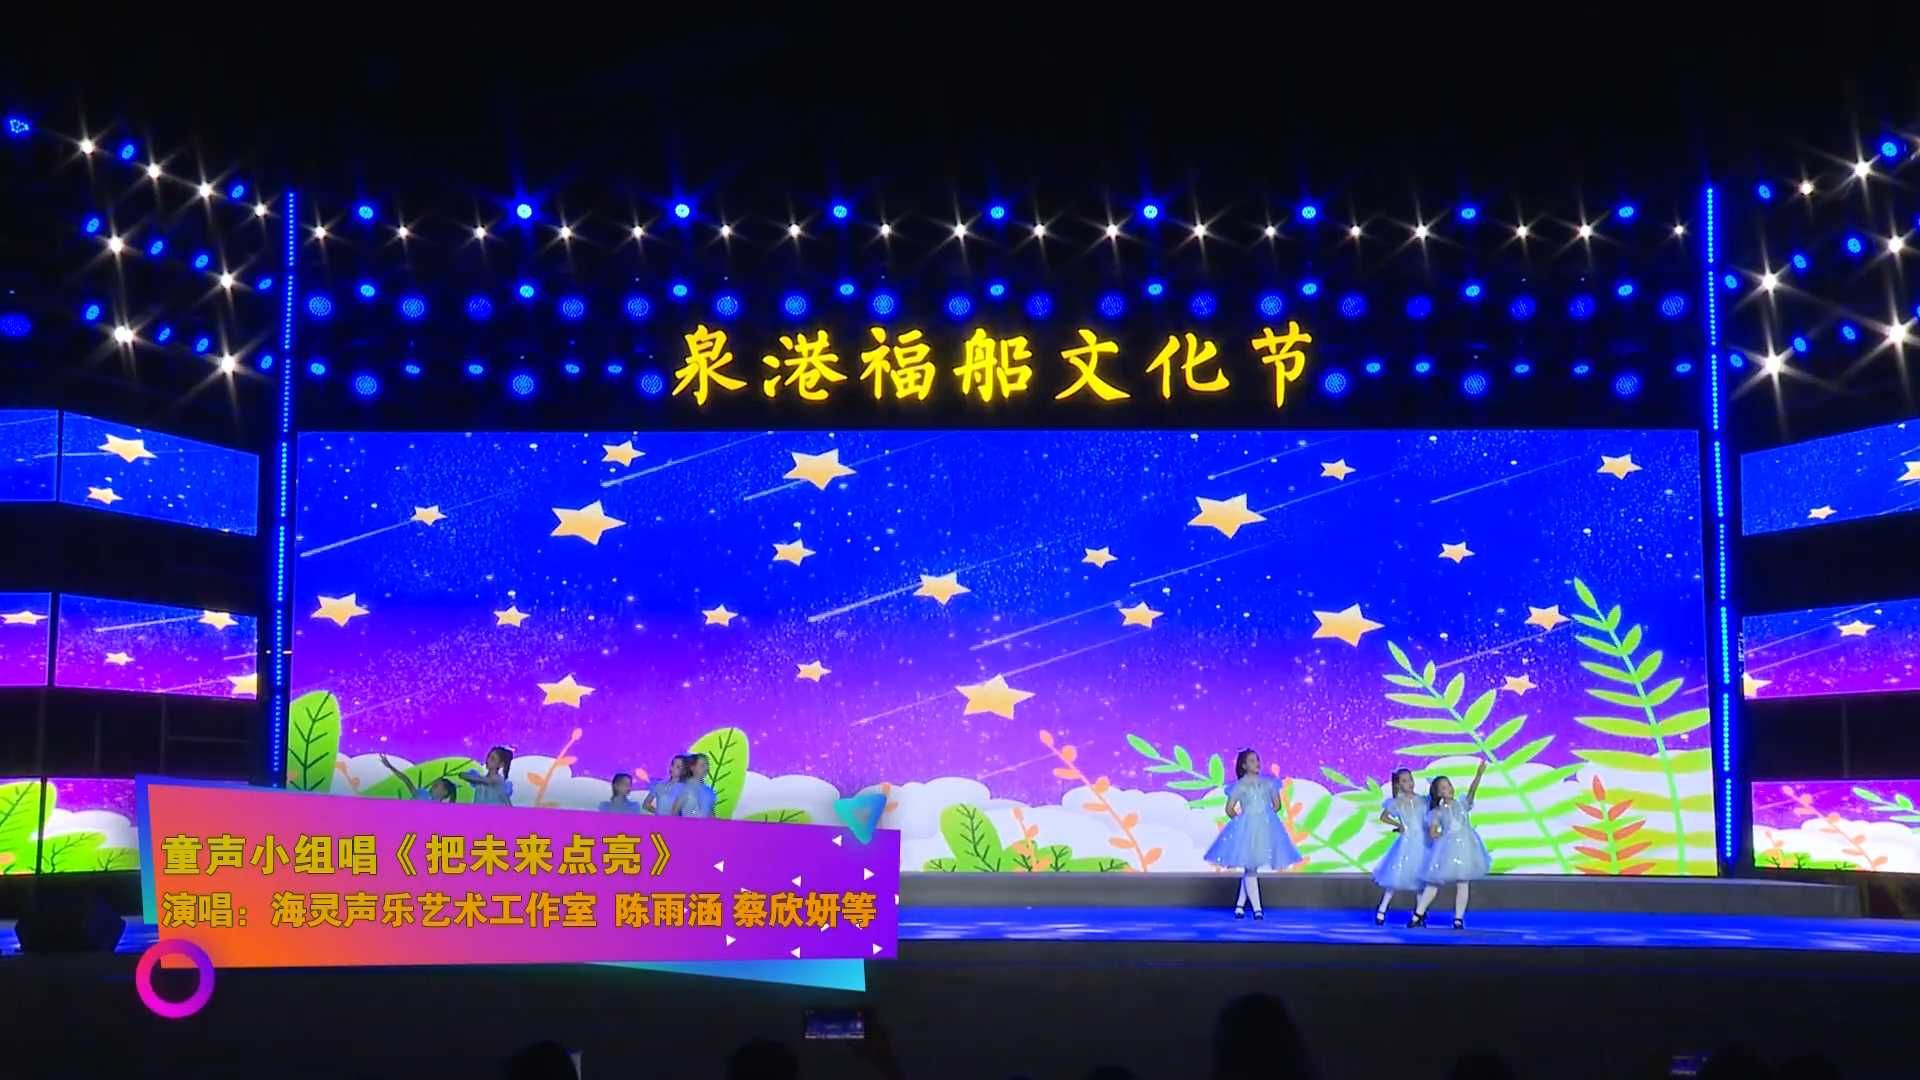 【福船文化節演唱會】童聲小組唱《把未來點亮》